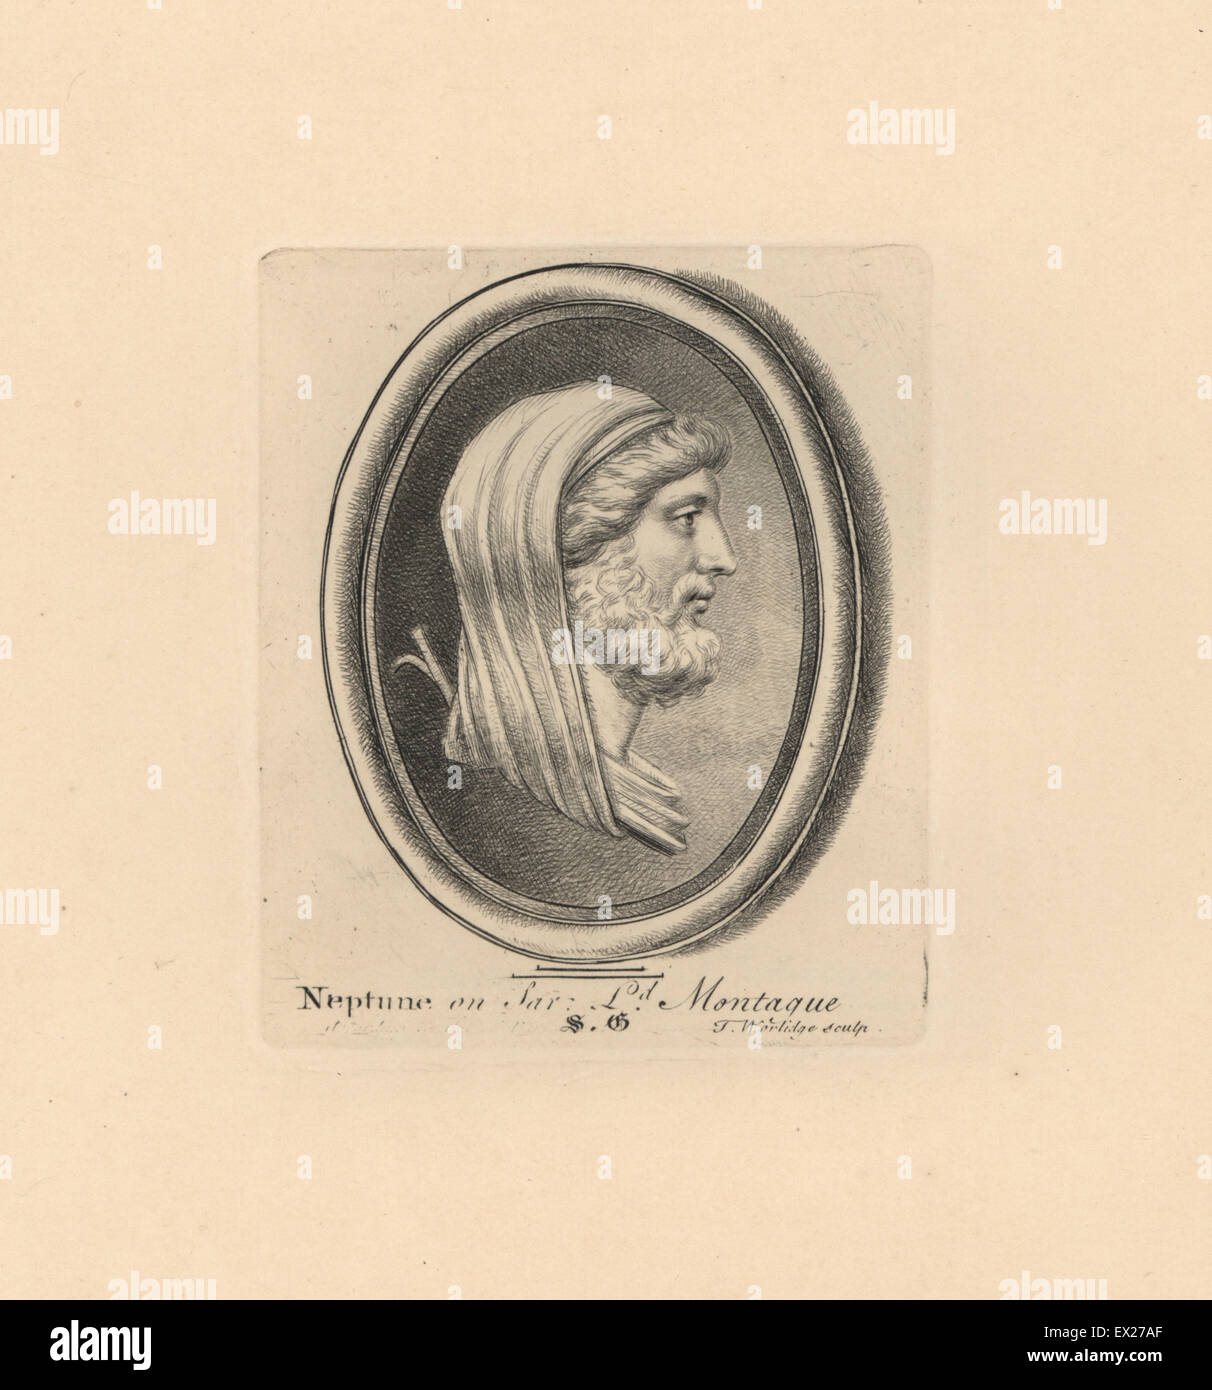 Porträt von Neptun, der römische Gott des Meeres, auf Sard von Lord Montague Sammlung. Kupferstich von Thomas Worlidge von James Vallentins eine hundert und acht Stiche aus antiken Perlen, 1863. Stockfoto